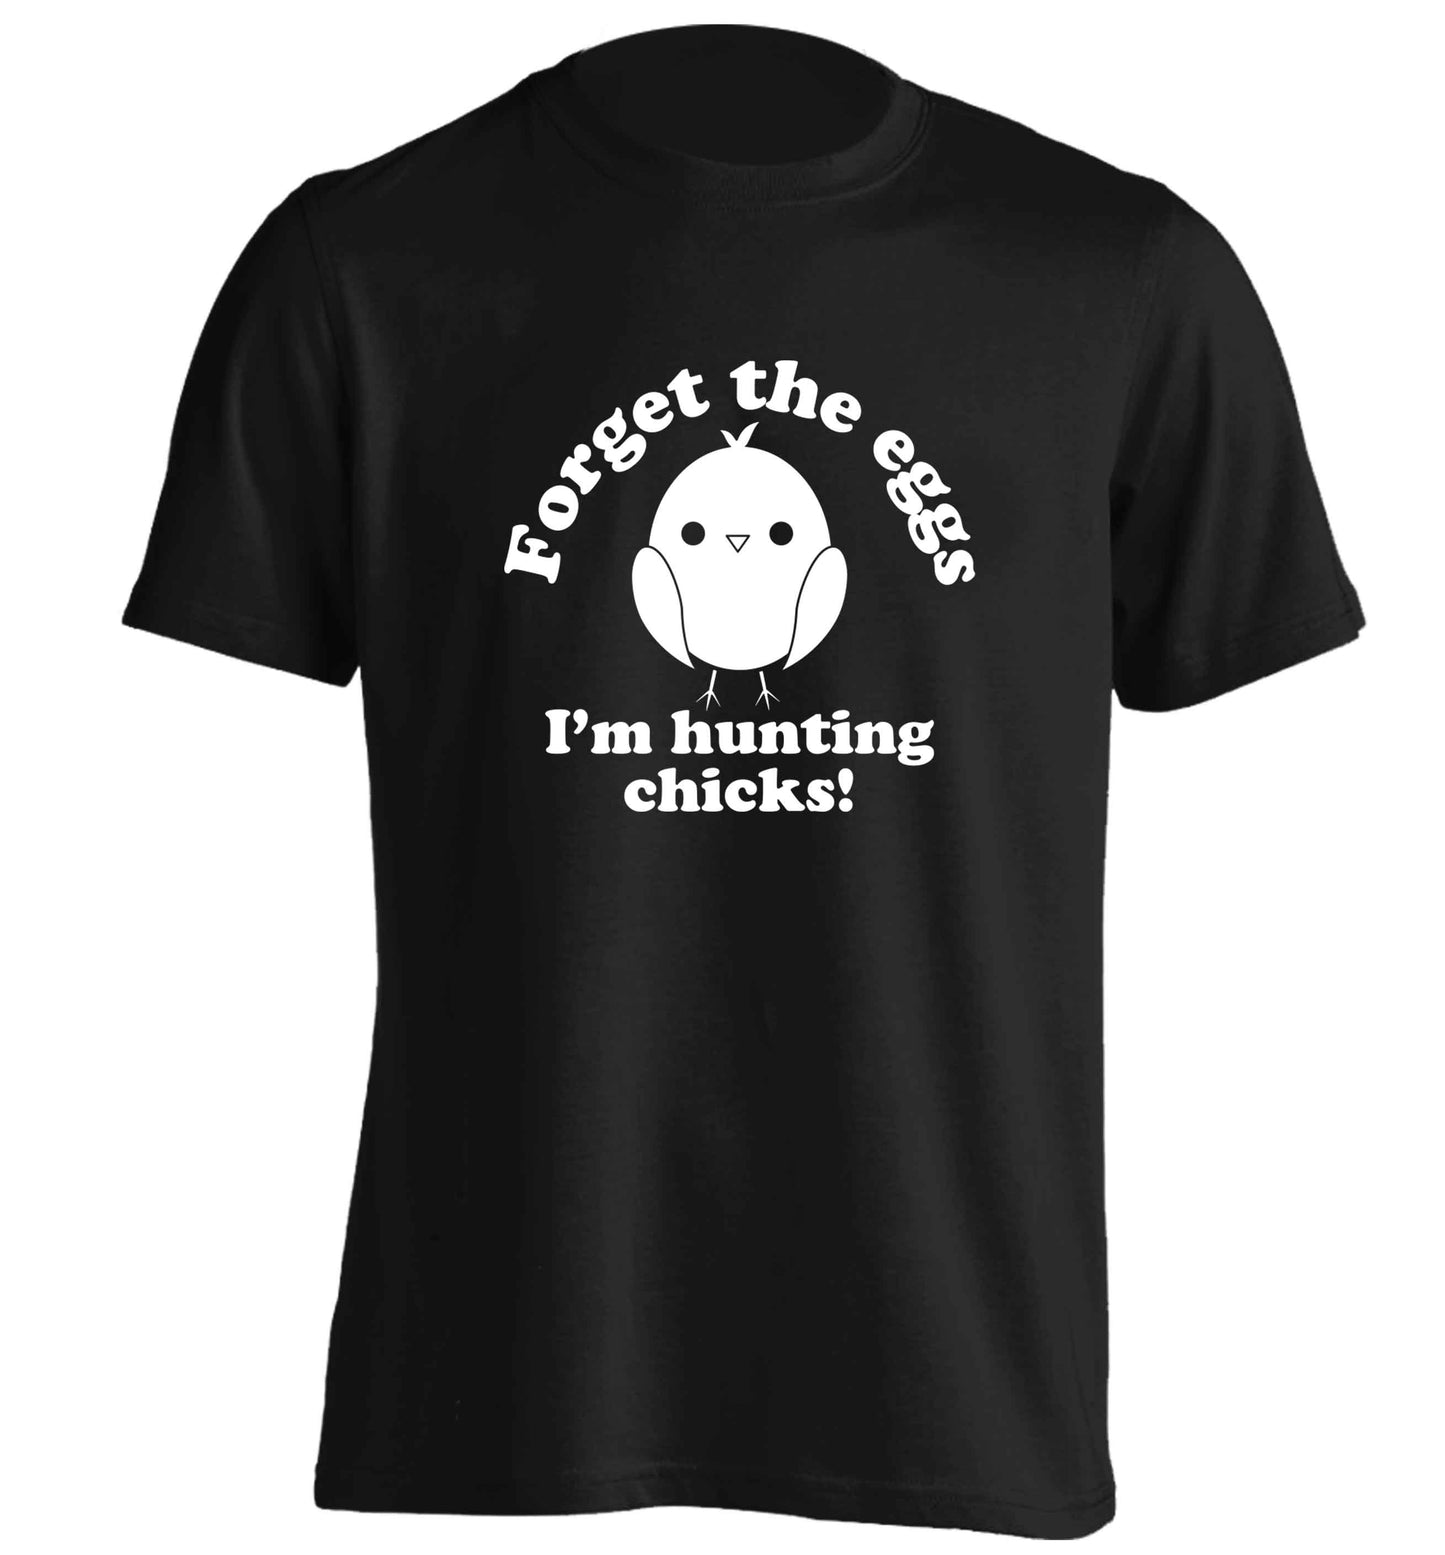 Forget the eggs I'm hunting chicks! adults unisex black Tshirt 2XL